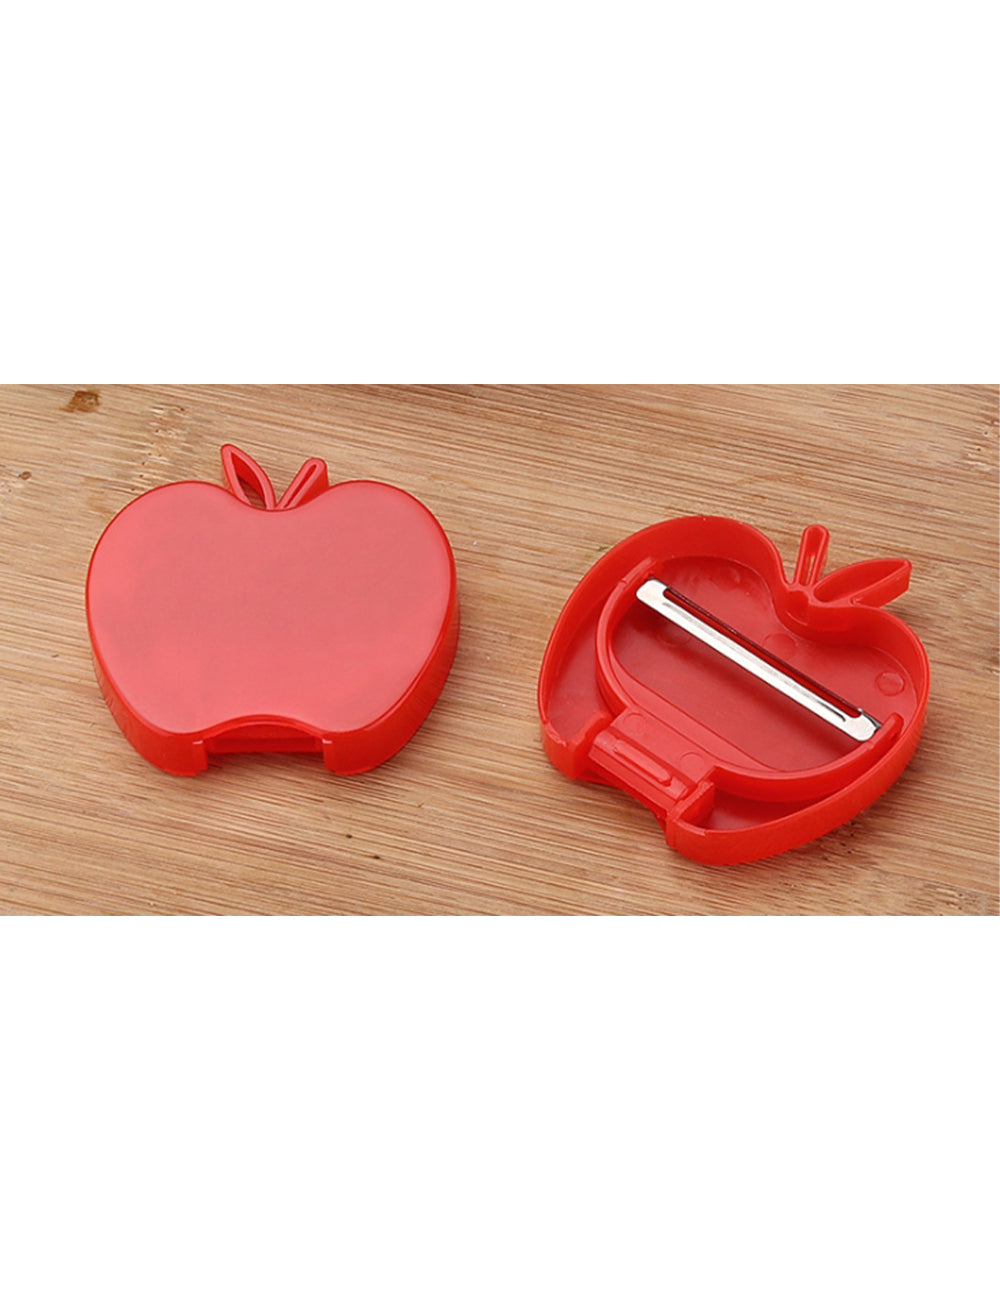 蘋果造型削皮器貼紙- 禮品、贈品、客製化禮贈品專家| 禮歐禮贈品